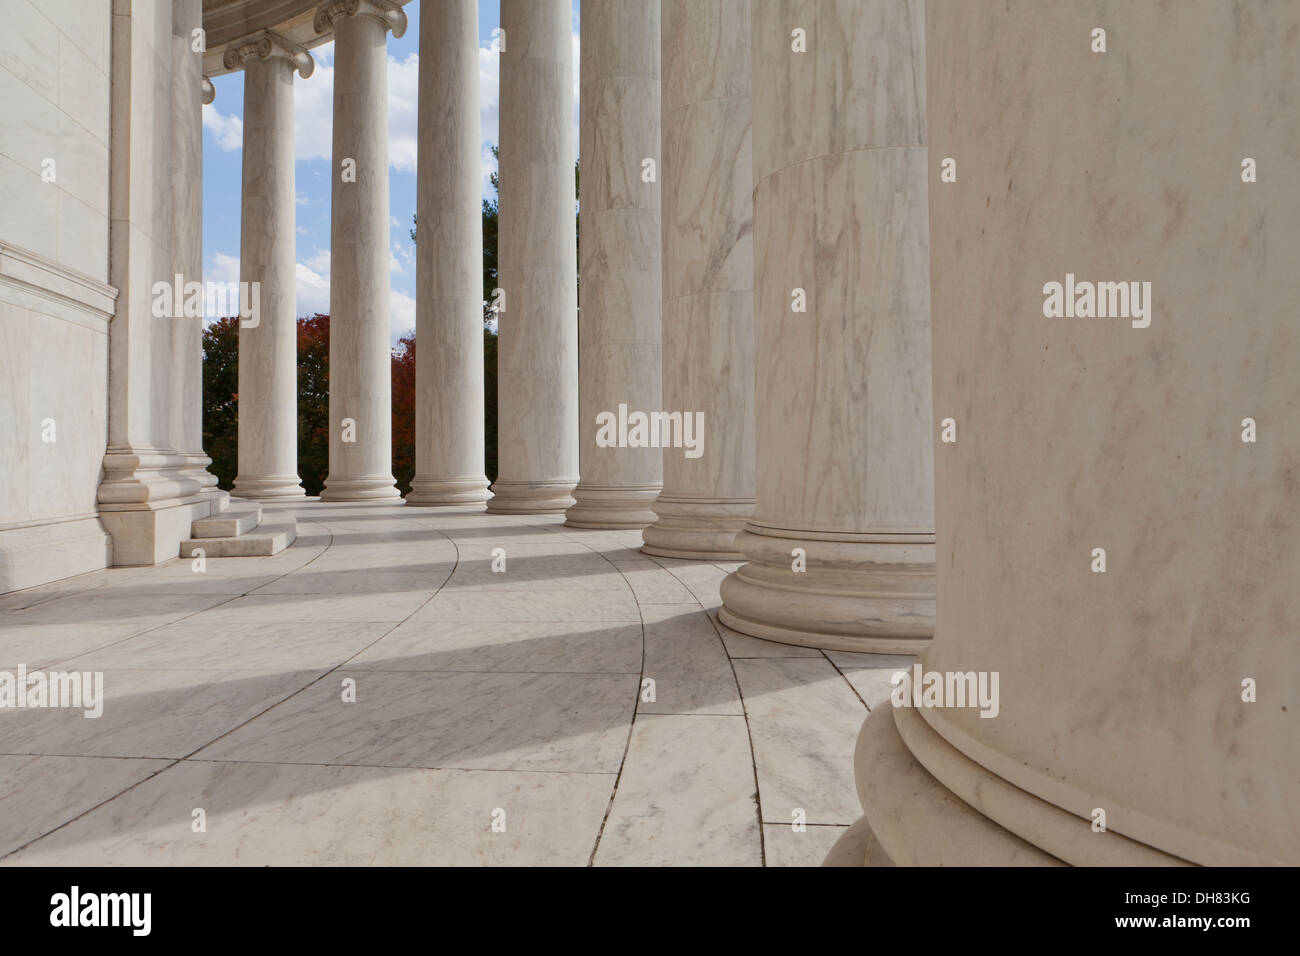 Marble columns of Thomas Jefferson Memorial - Washington, DC USA Stock Photo